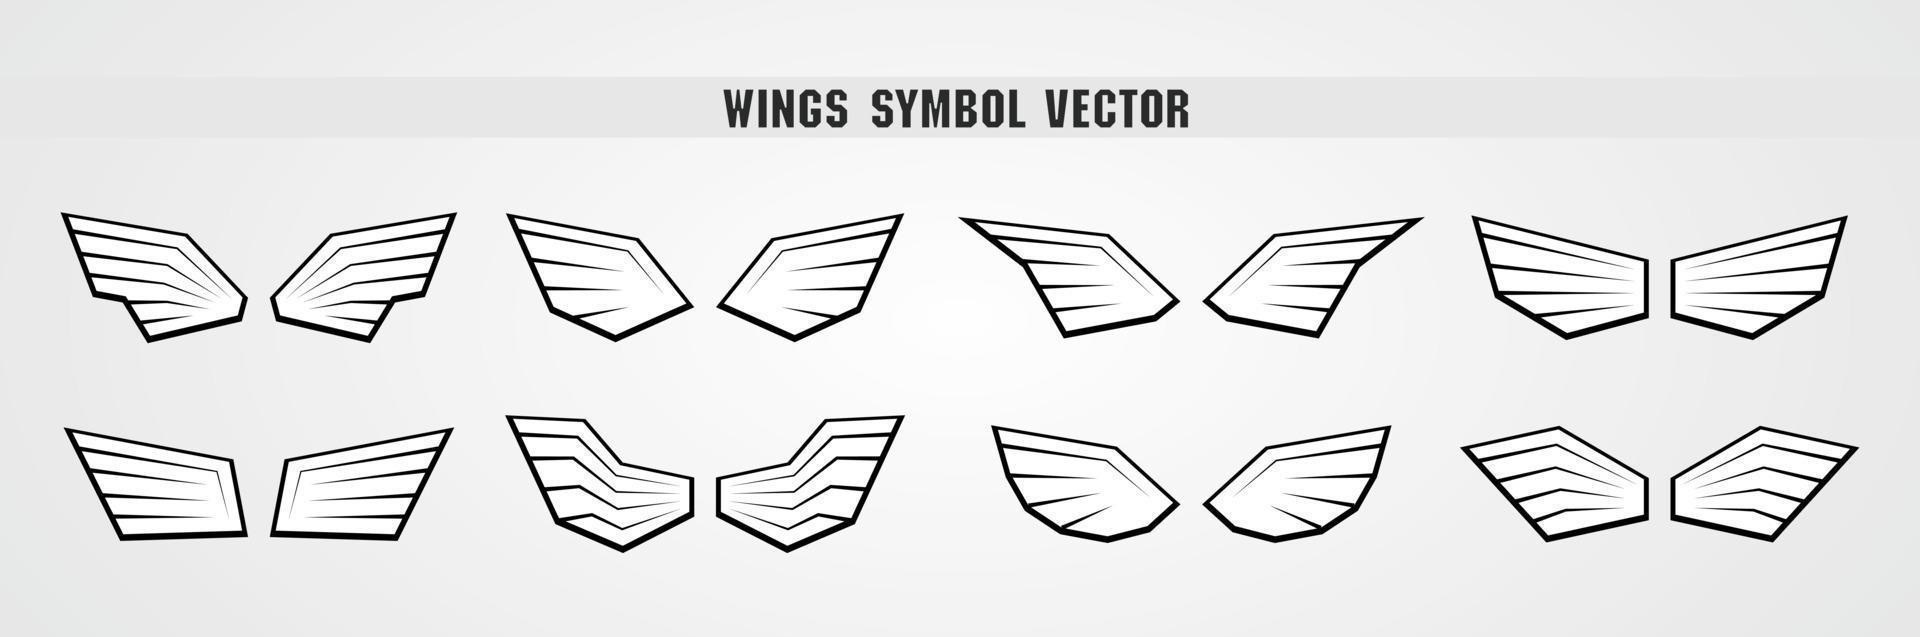 cool sterke stijl zwart-wit vleugels symbool grafische vector collectie